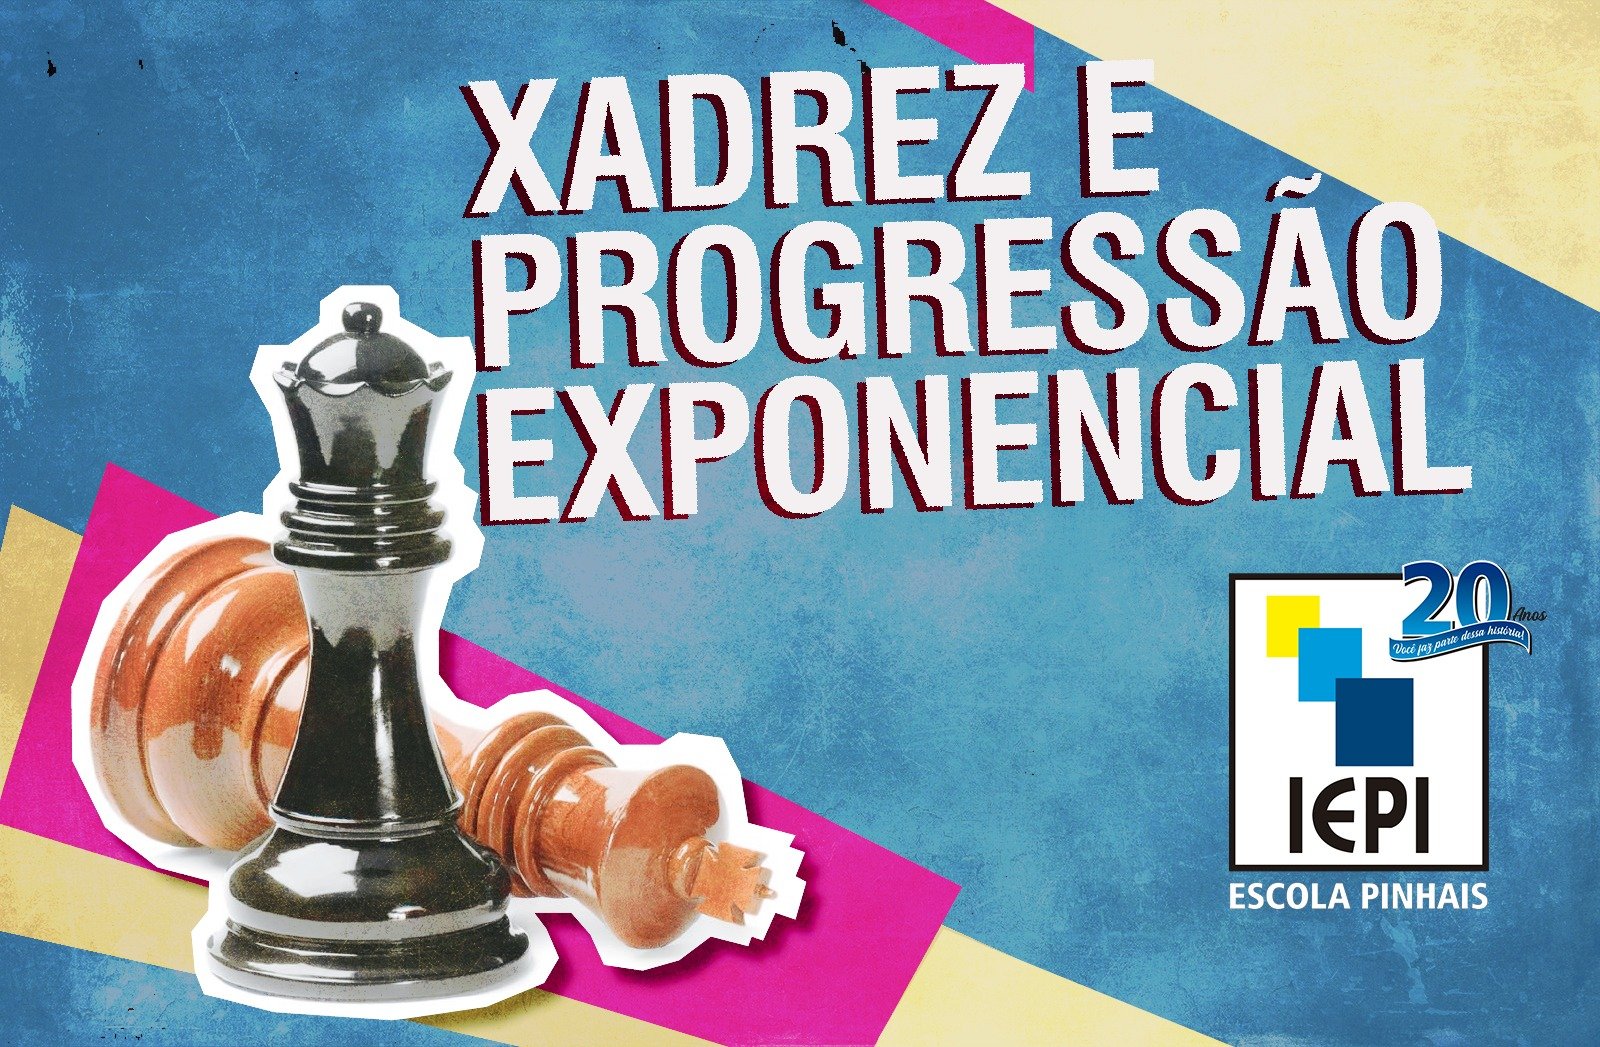 Compreendendo o crescimento exponencial com a lenda do inventor do xadrez, by Futuro Exponencial, Futuro Exponencial